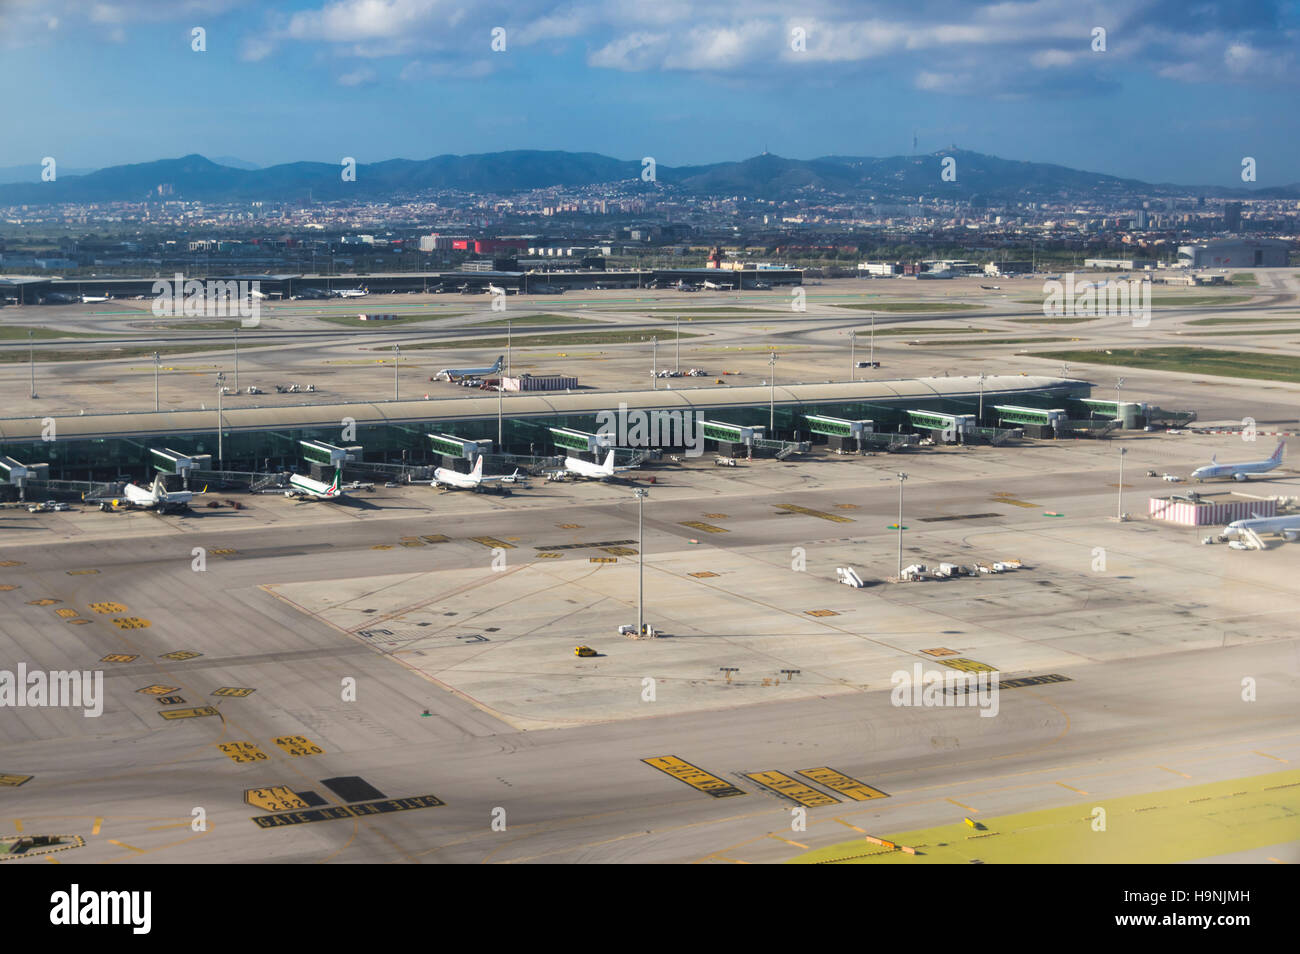 Fotografía aérea del aeropuerto internacional de Barcelona El Prat con la terminal T1 en el primer plano. Foto de stock